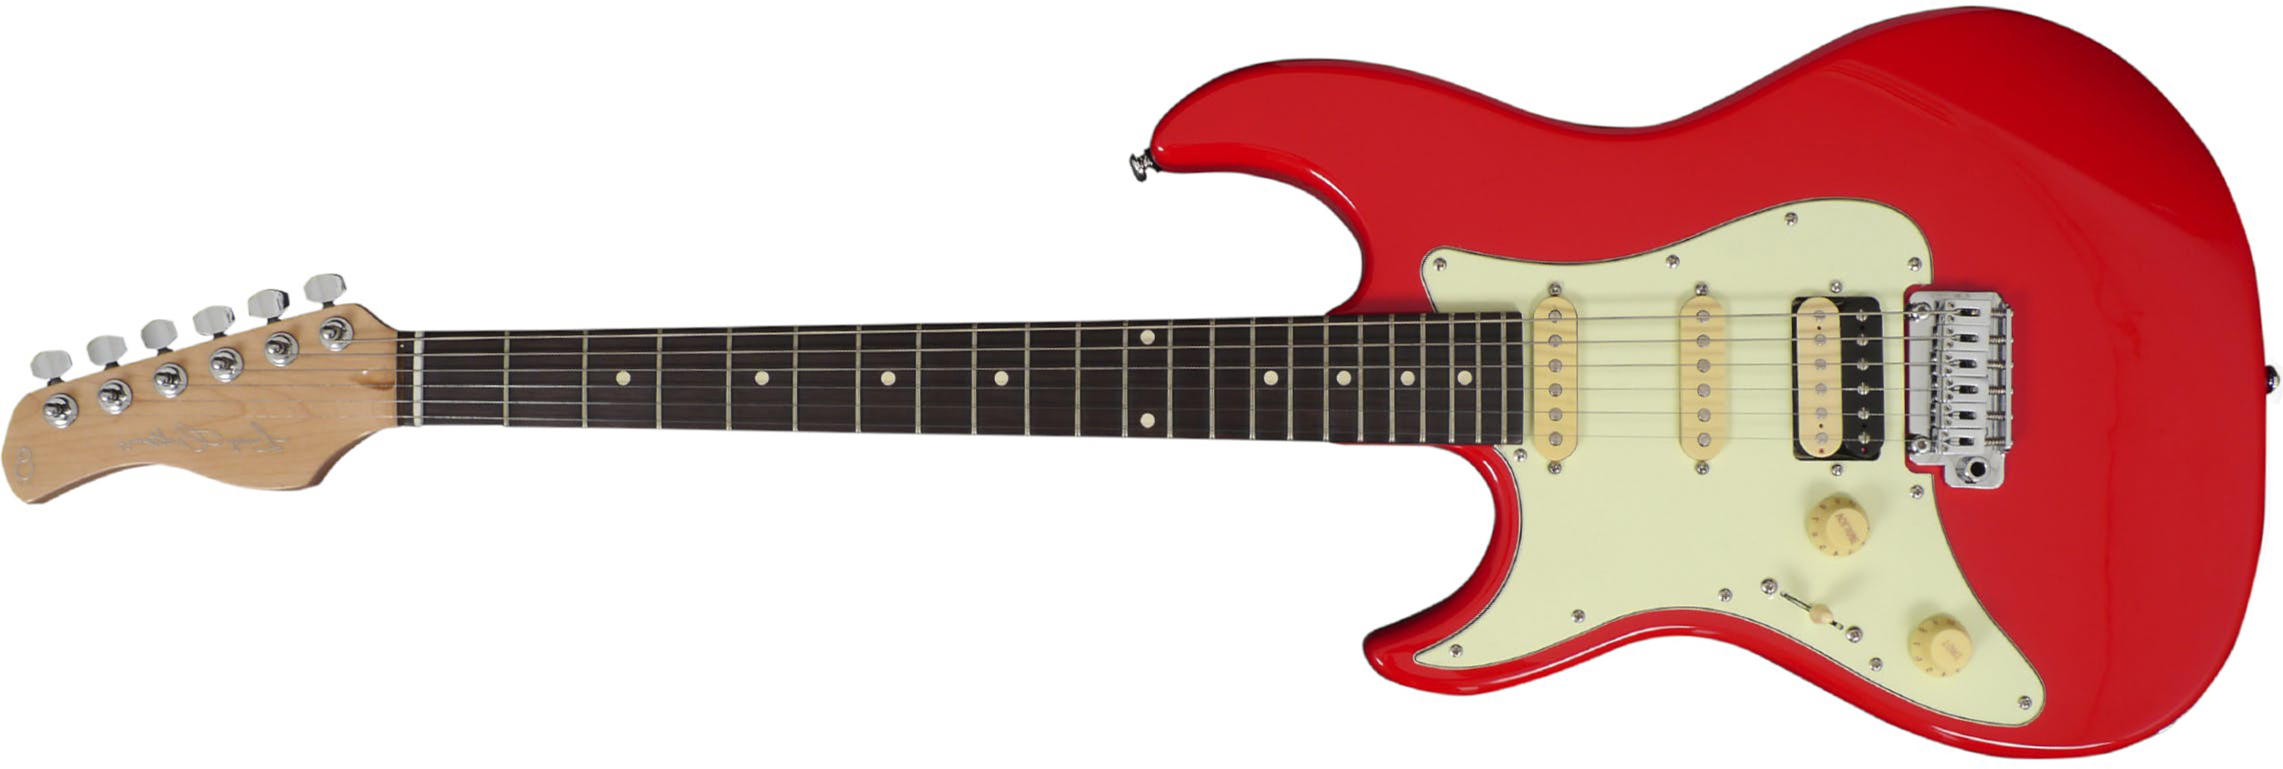 Sire Larry Carlton S3 Lh Signature Gaucher Hss Trem Rw - Dakota Red - Guitare Électrique Gaucher - Main picture